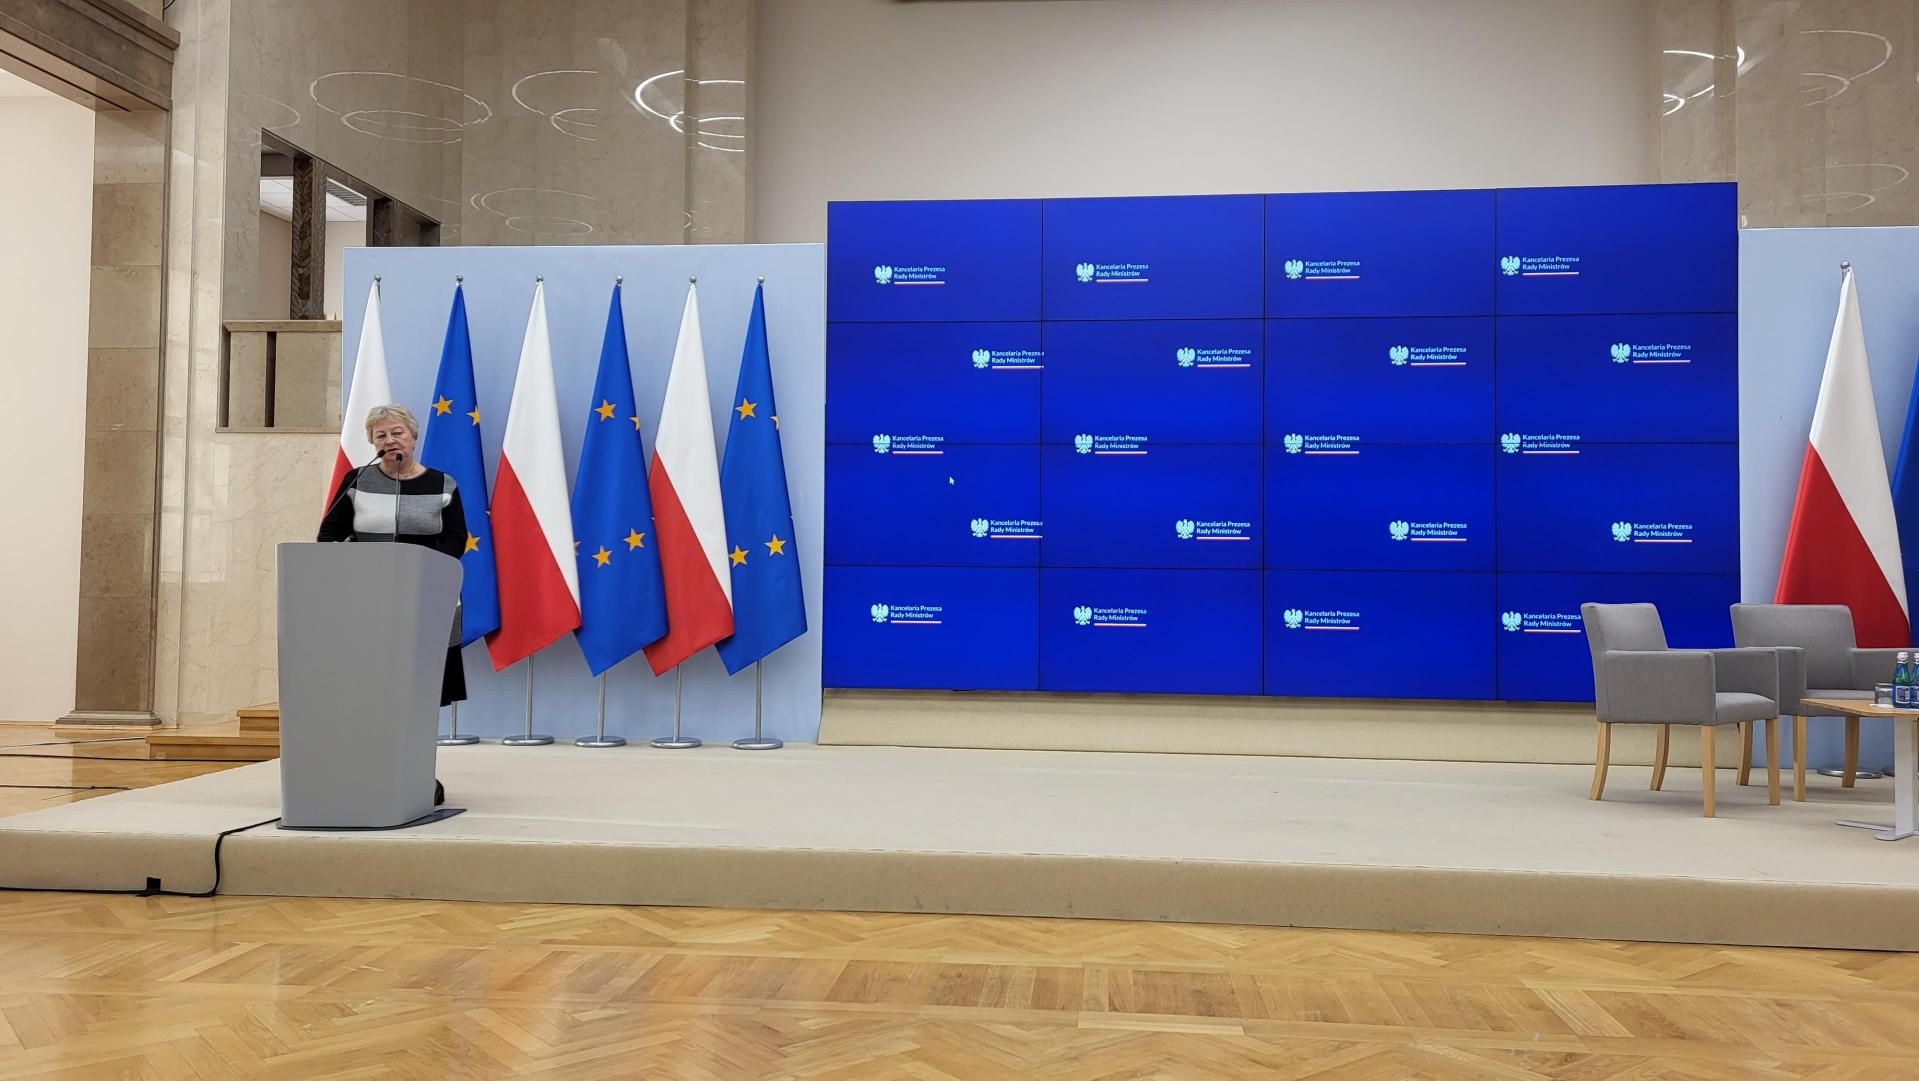 Scena z mównicą oraz w tle flagi Polski i UE. Obok duży ekran do prezentacji